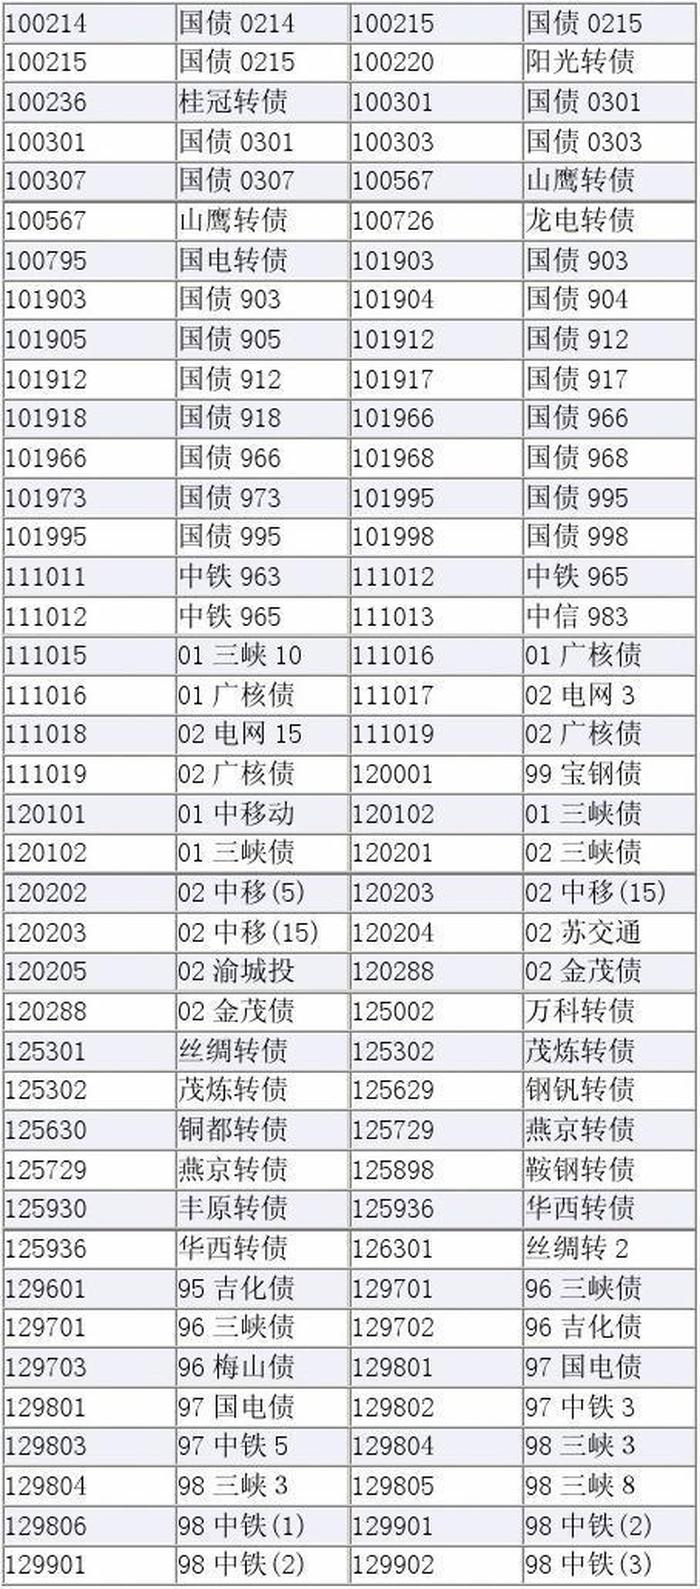 中国证券股票代码多少，证券股票一览表代码